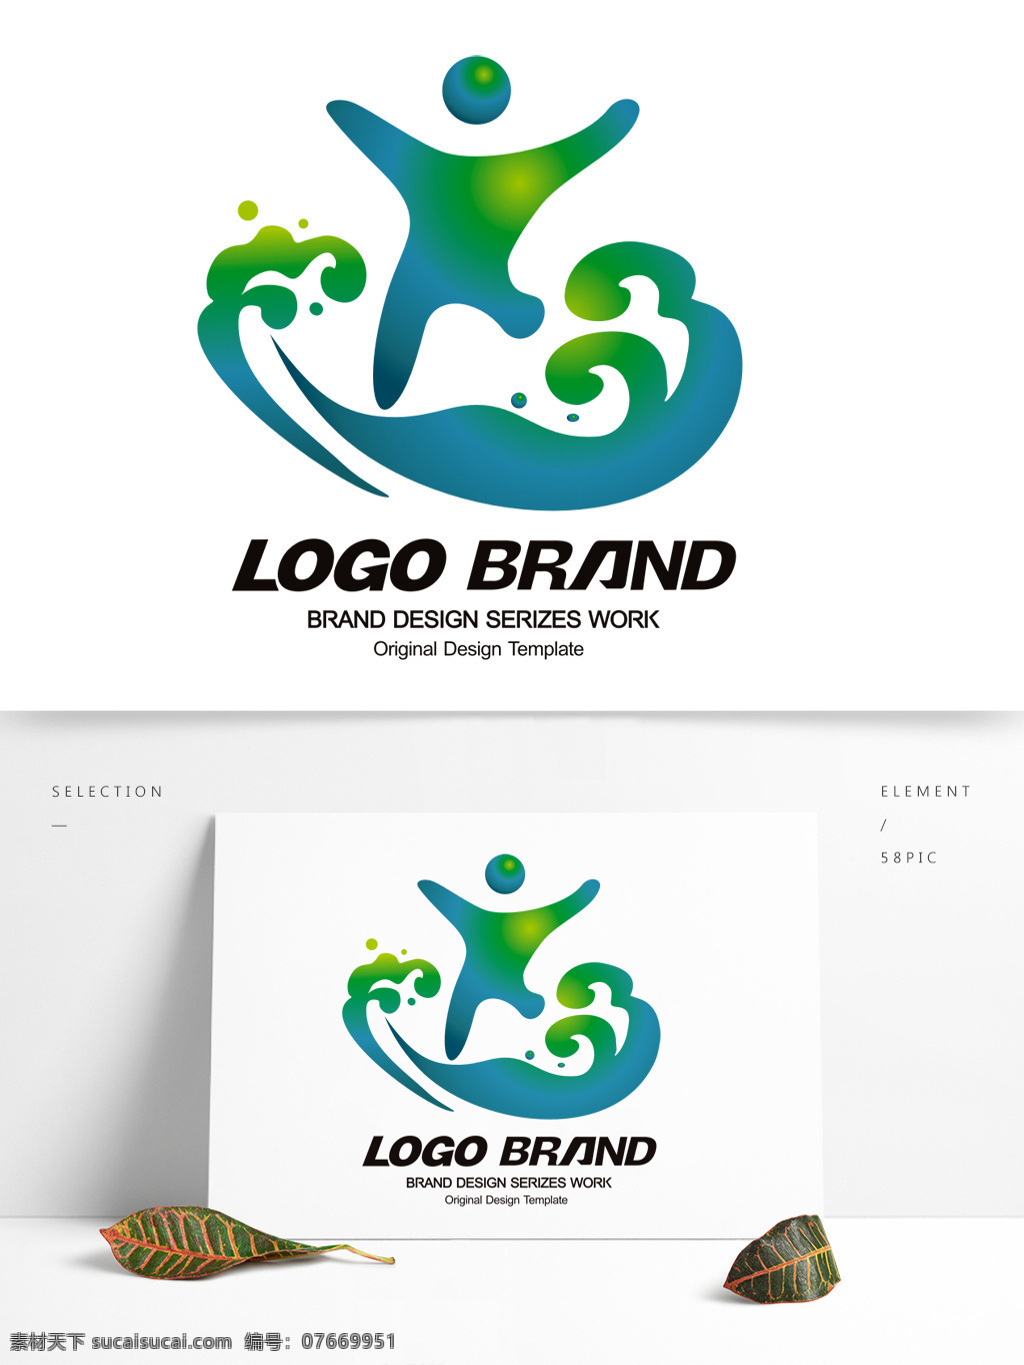 矢量 创意 蓝绿 浪花 旅游公司 标志 logo x 字母 标志设计 d 旅游 公司 公司标志设计 企业 会徽标志设计 企业标志设计